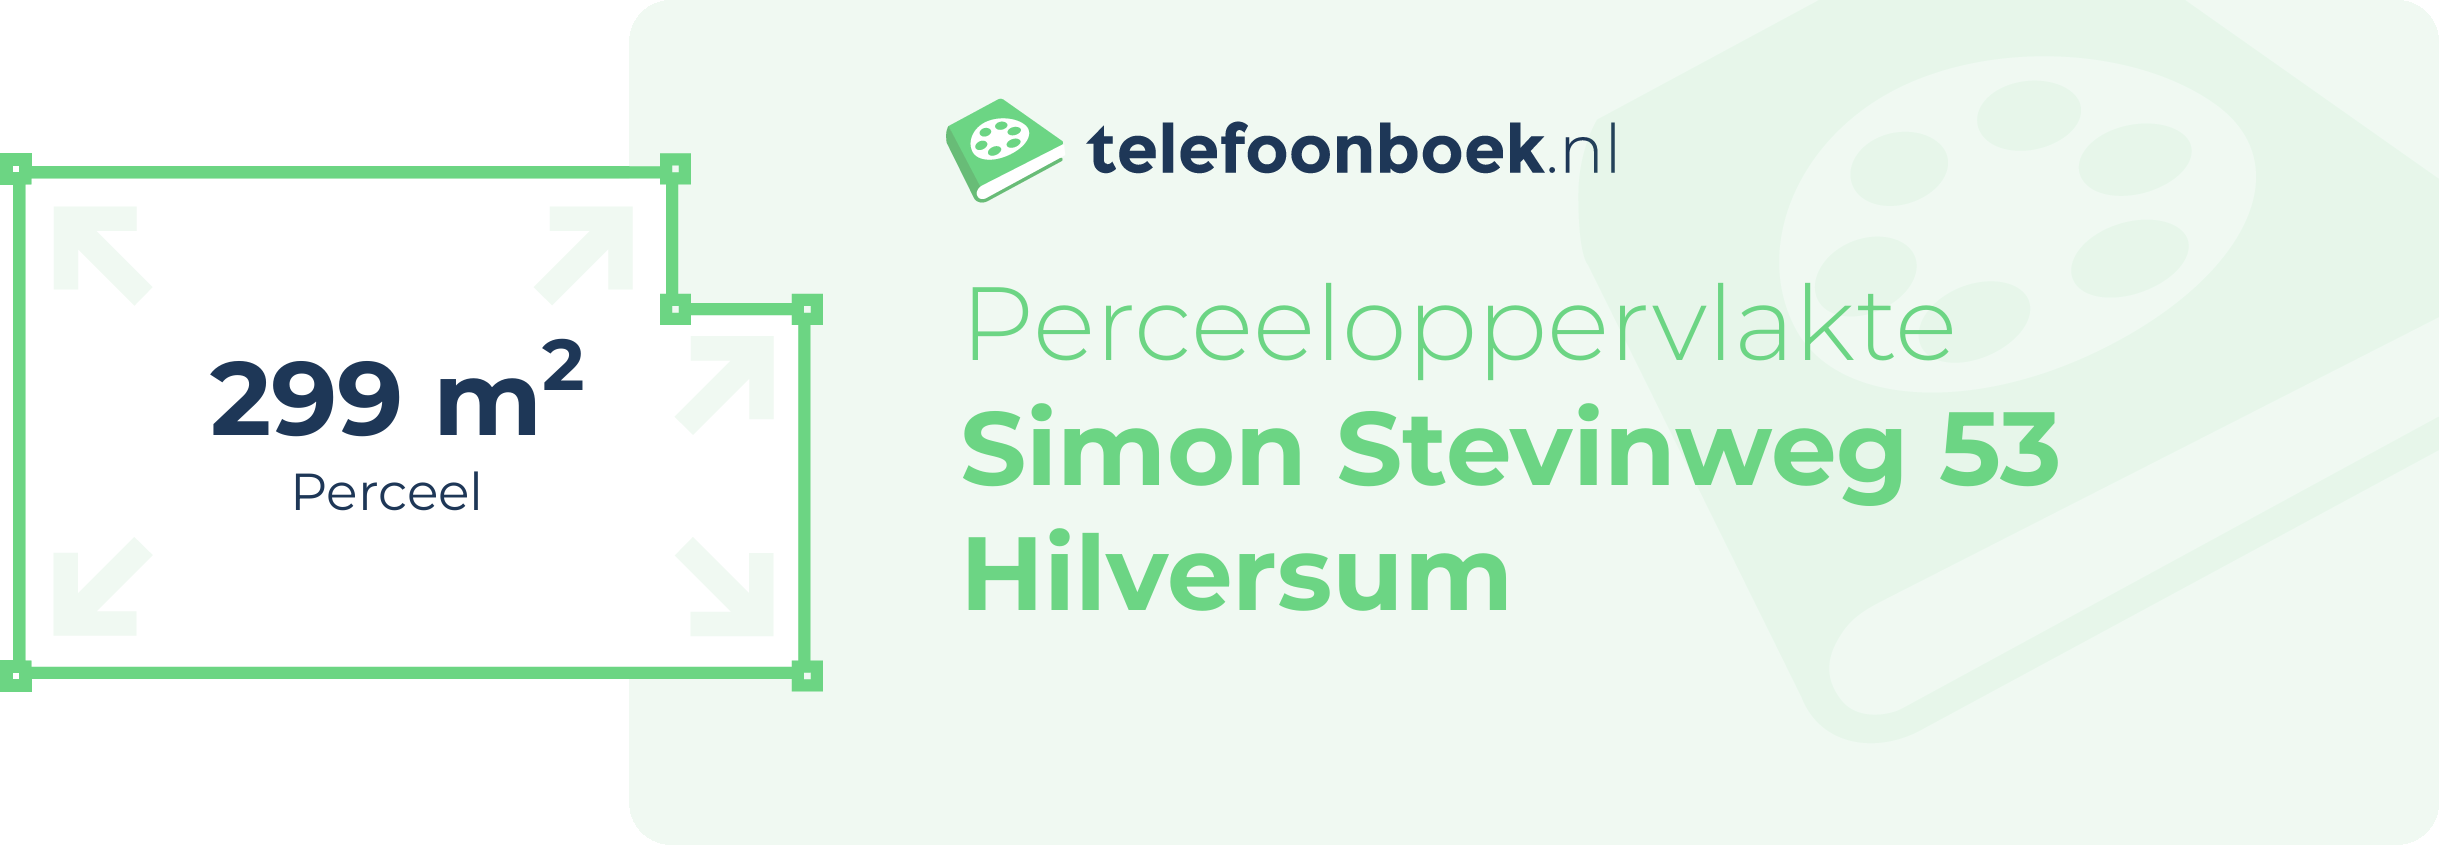 Perceeloppervlakte Simon Stevinweg 53 Hilversum